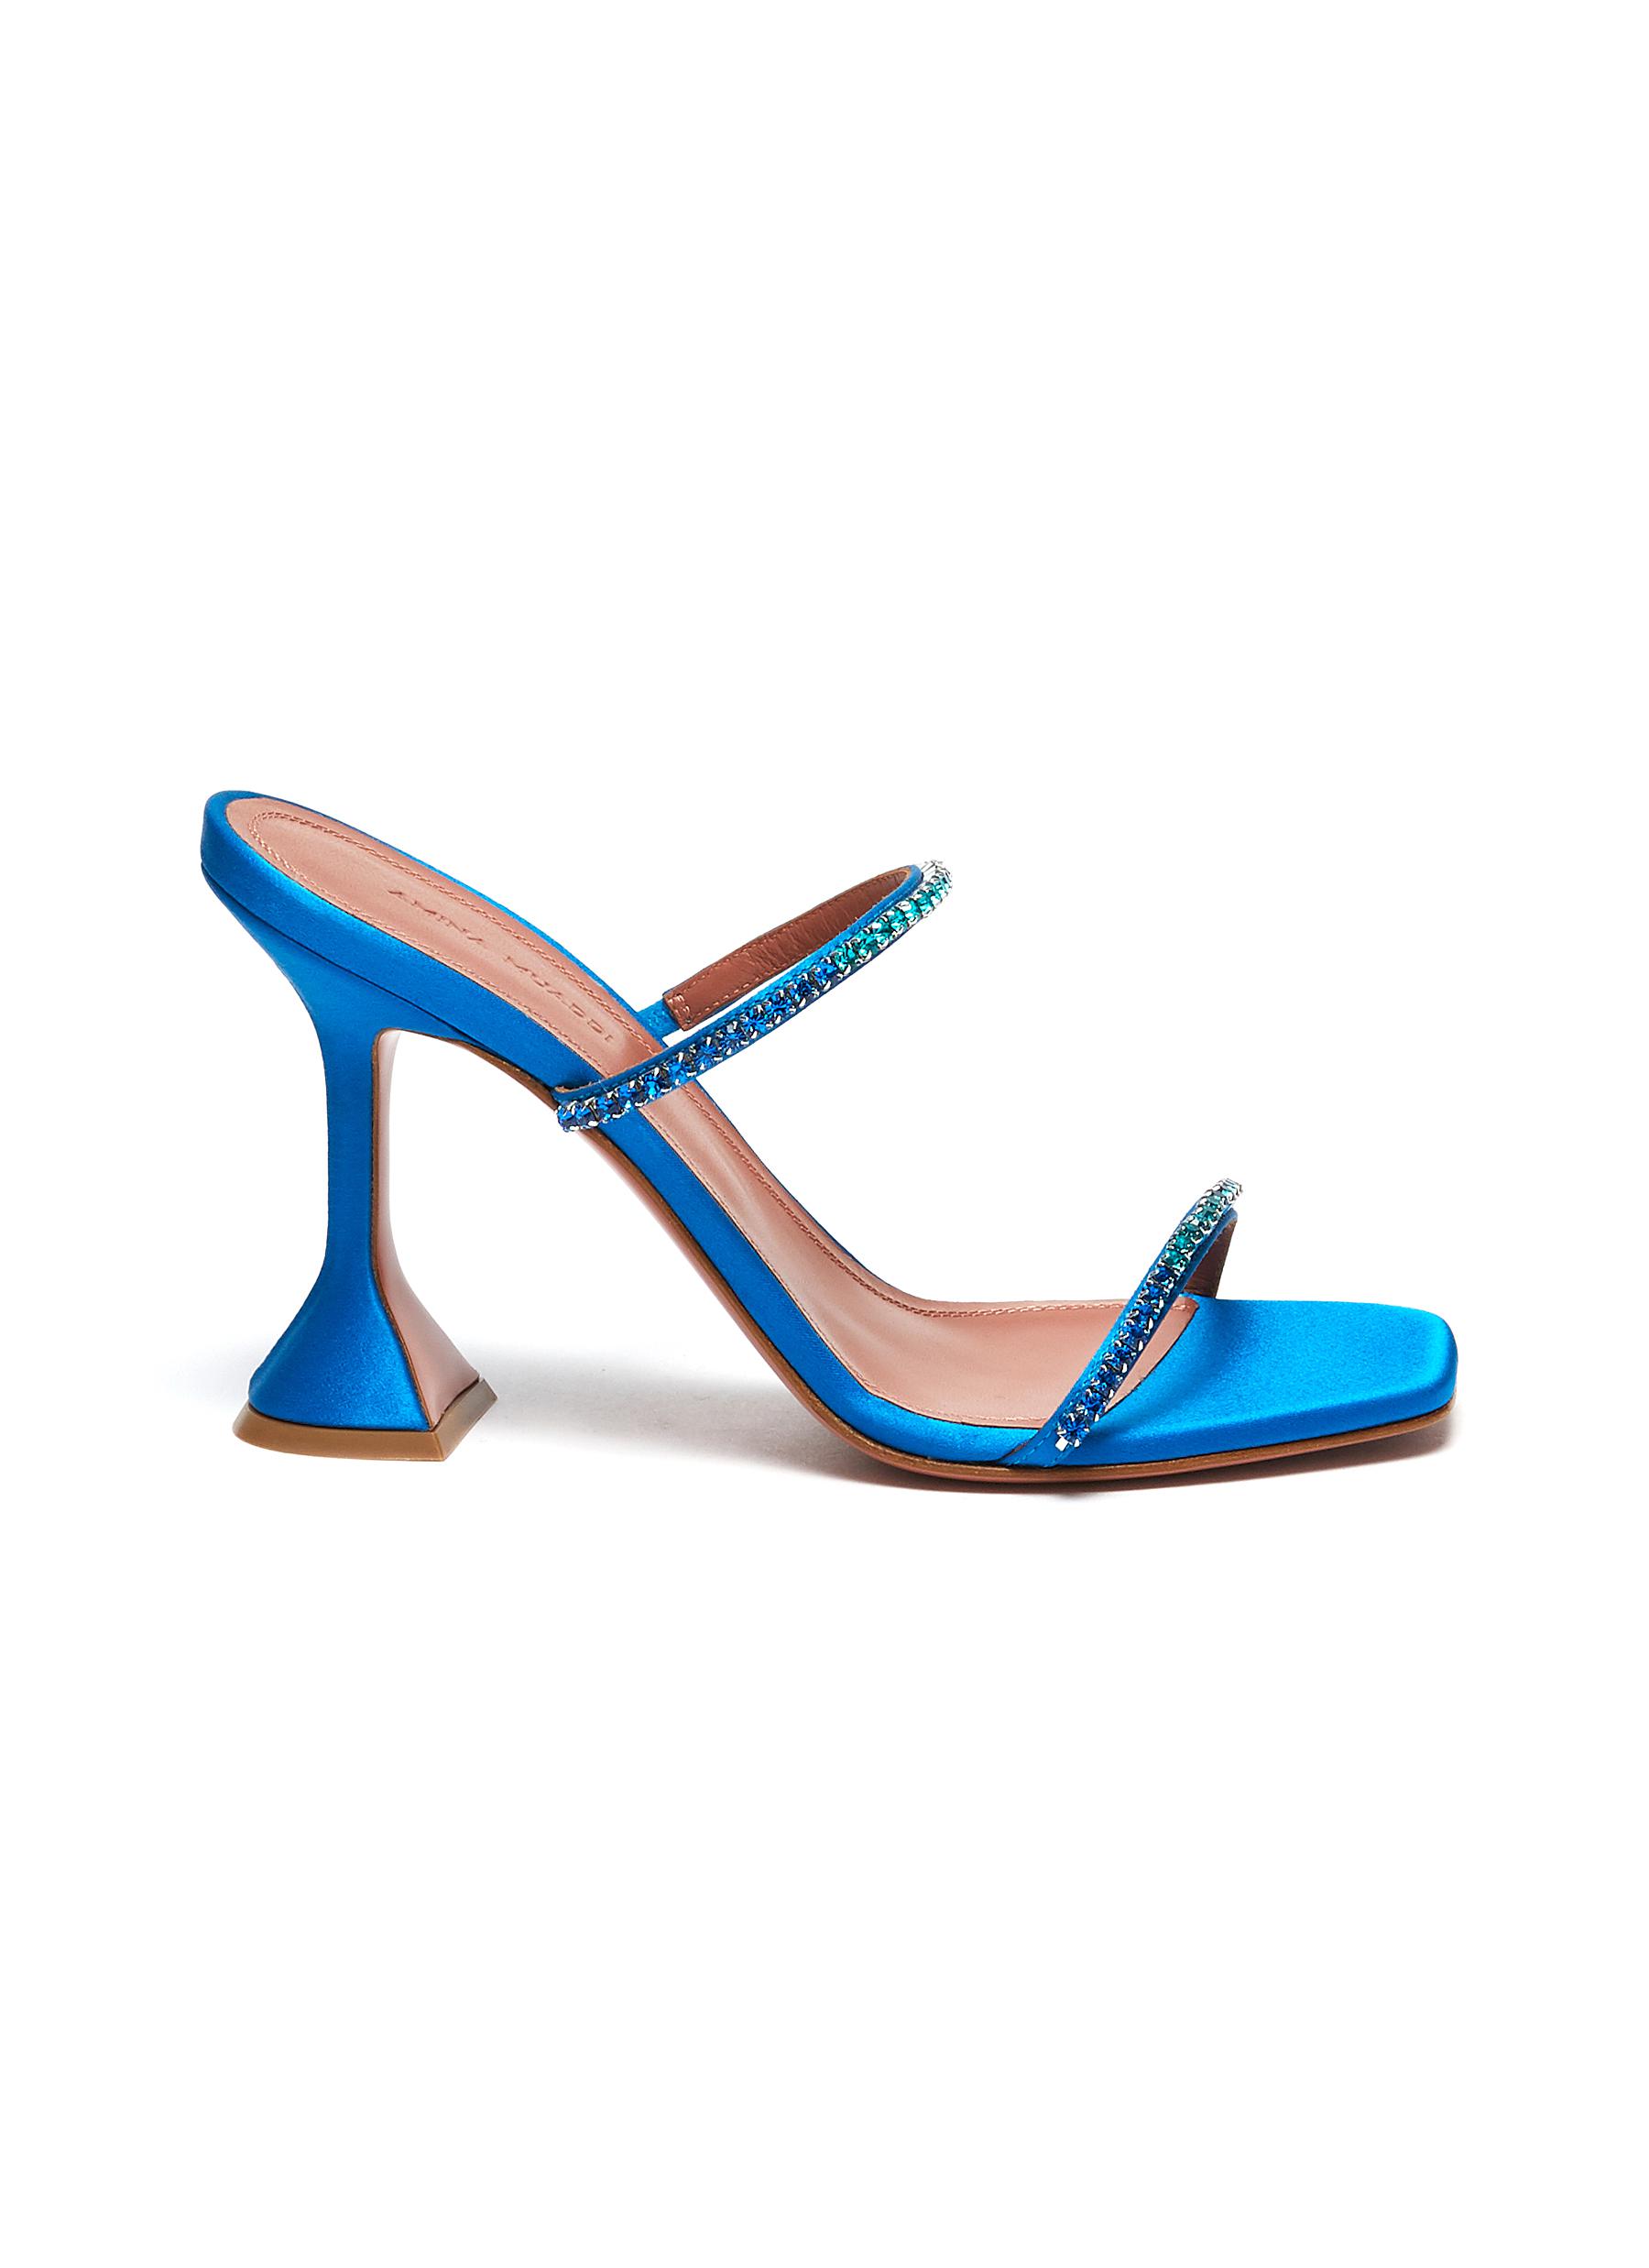 Gilda Ombre' Crystal Embellished Satin Heeled Sandals